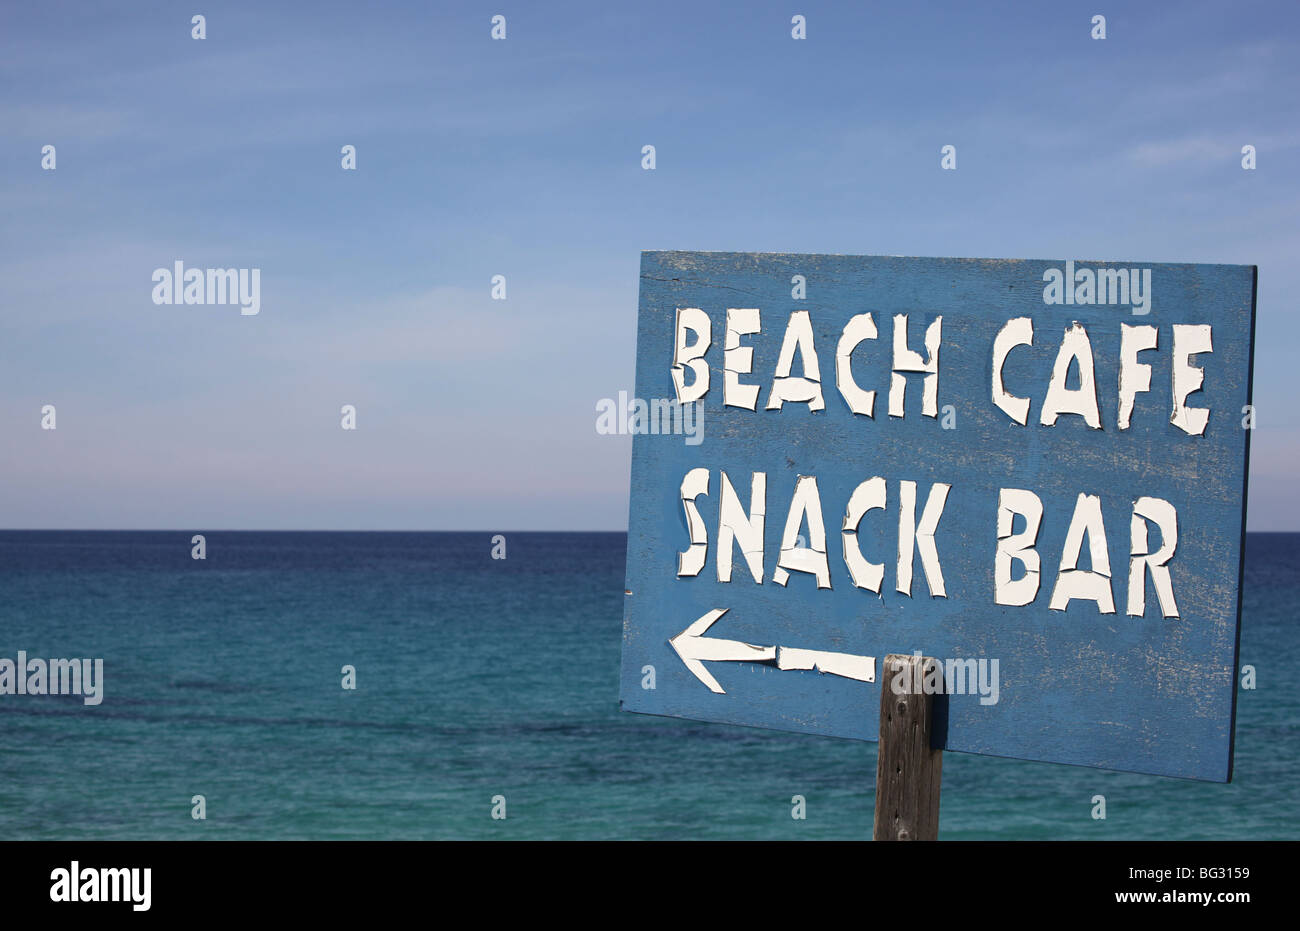 Wetter ramponierten Schild, Menschen zu einem Beach Cafe und Snack-Bar am Meer Stockfoto